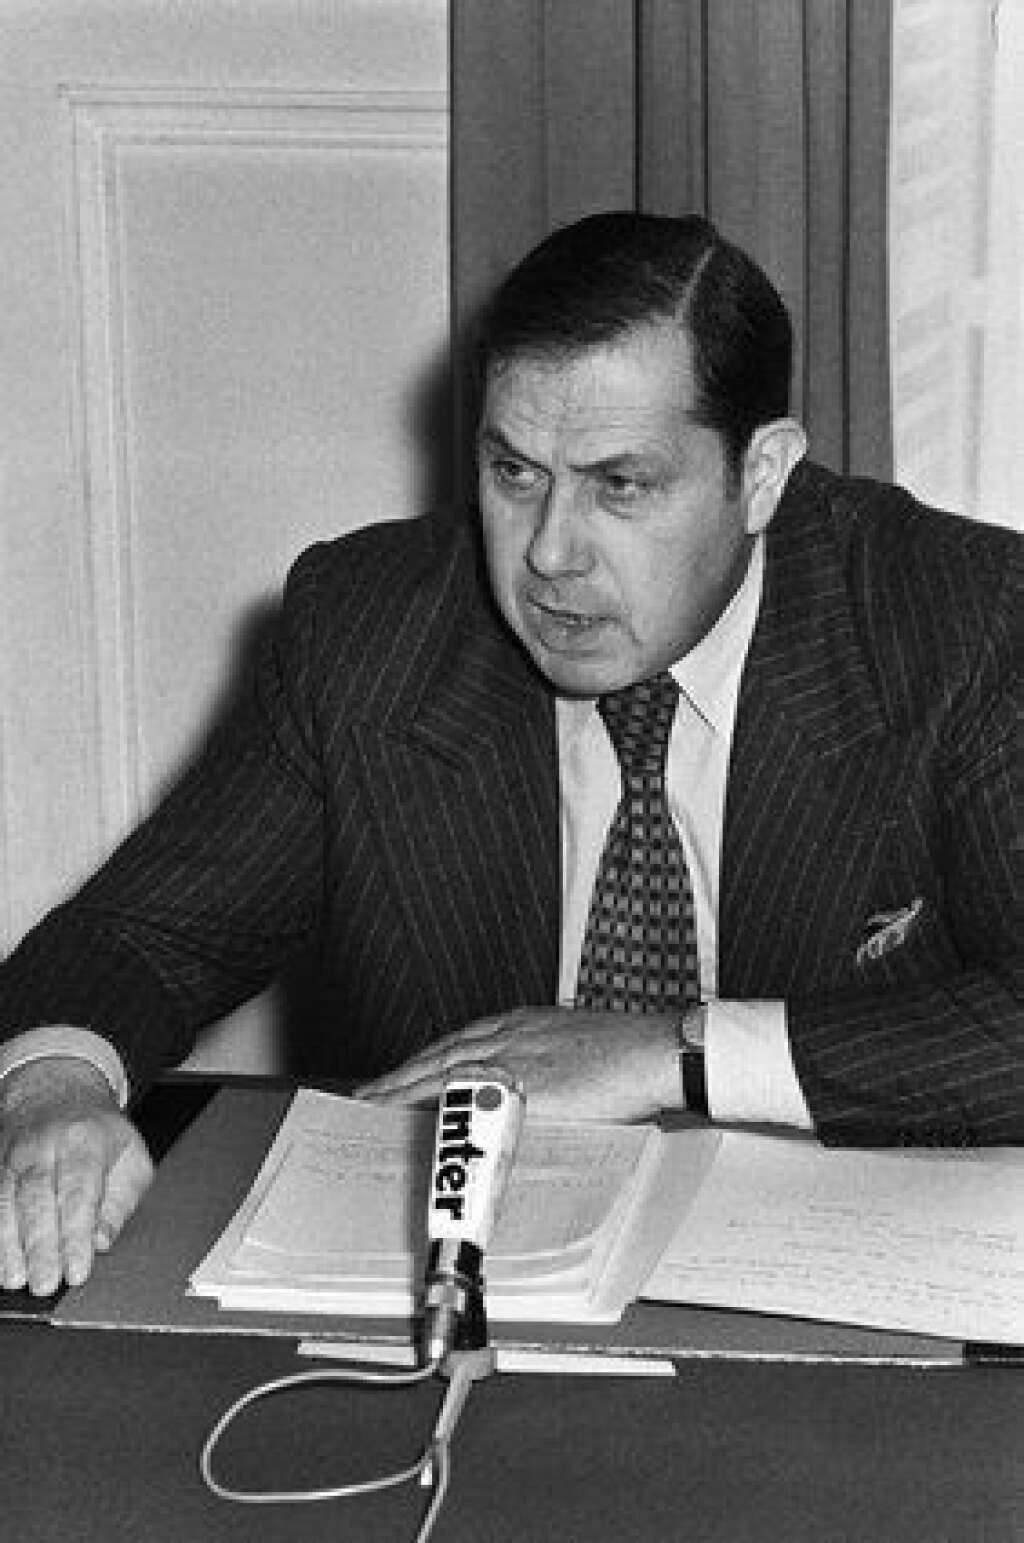 1968: le baron des Hauts-de-Seine - Vainqueur de sa première élection en 1968, il est alors député des Hauts-de-Seine. Un fief où il sera toujours élu, comme sénateur (jusqu'en 2011) ou au conseil général. On le voit ici en 1976, trois après qu'il a été élu président du département (un poste qu'il occupera jusqu'en 2004).